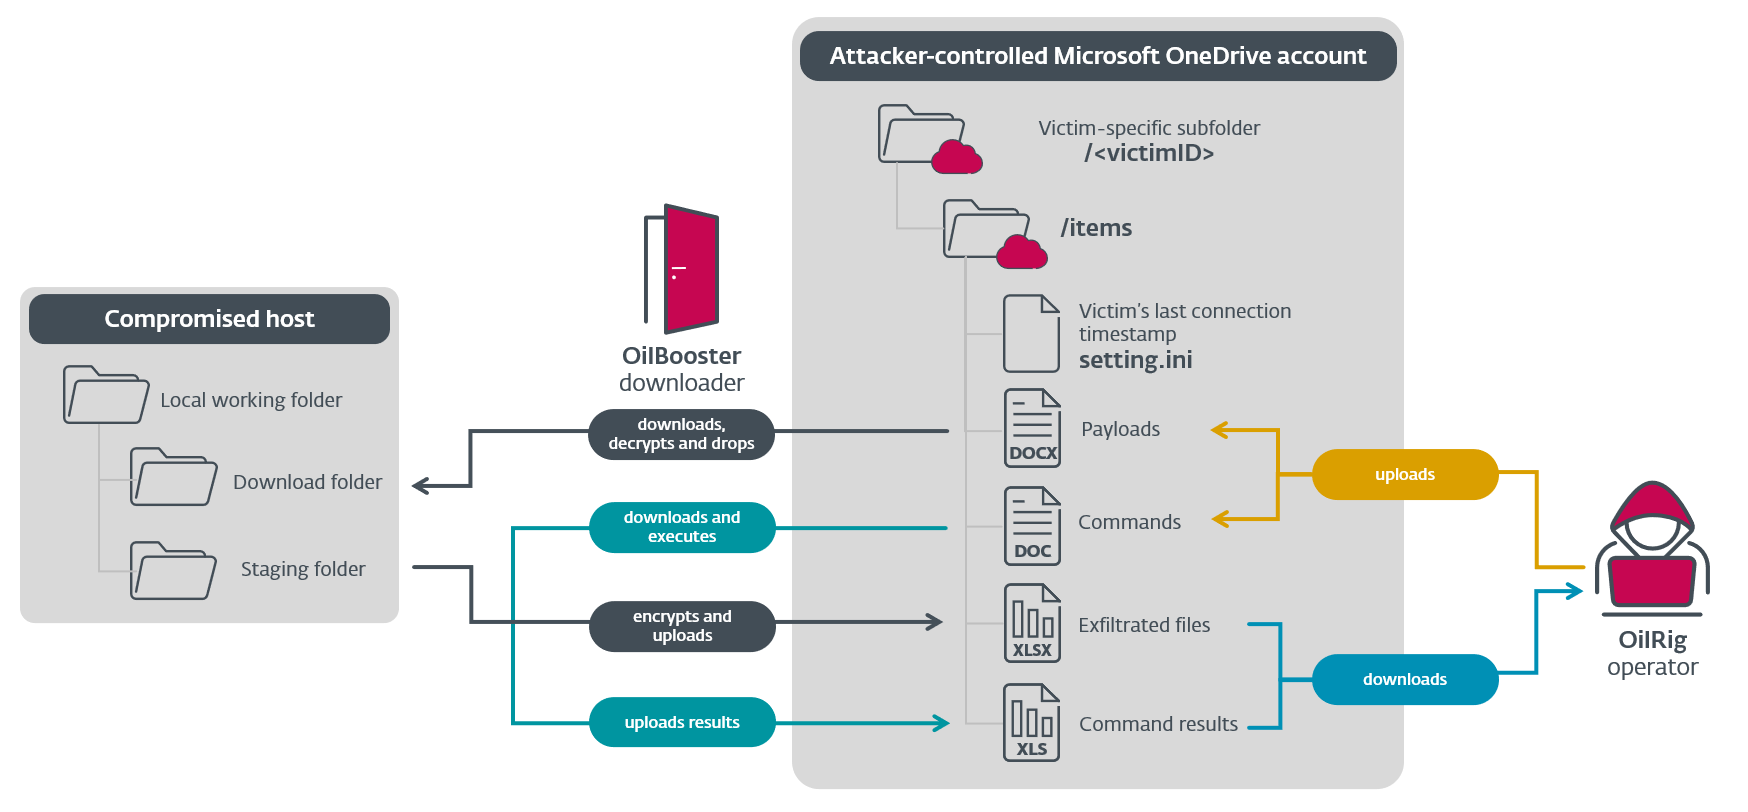 شکل 4 نمای کلی پروتکل ارتباطی C&C OilBooster با استفاده از یک حساب مشترک OneDrive